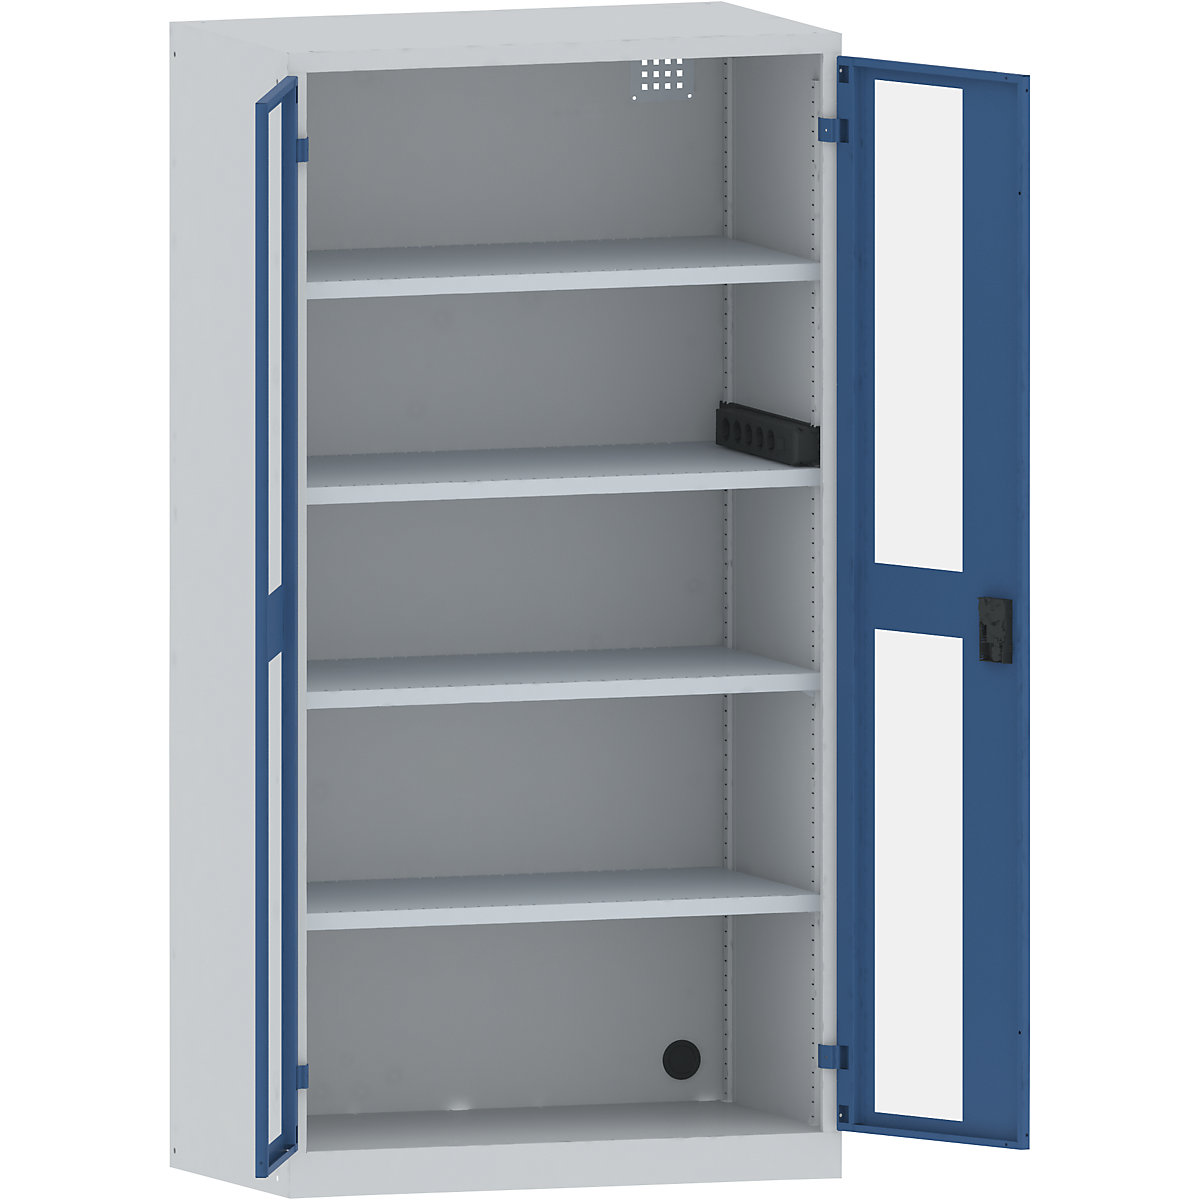 Accuoplaadkast met stroomvoorziening – LISTA, 4 legborden, deuren met zichtvenster, contactdooslijst op de zijkant, grijs/blauw-24